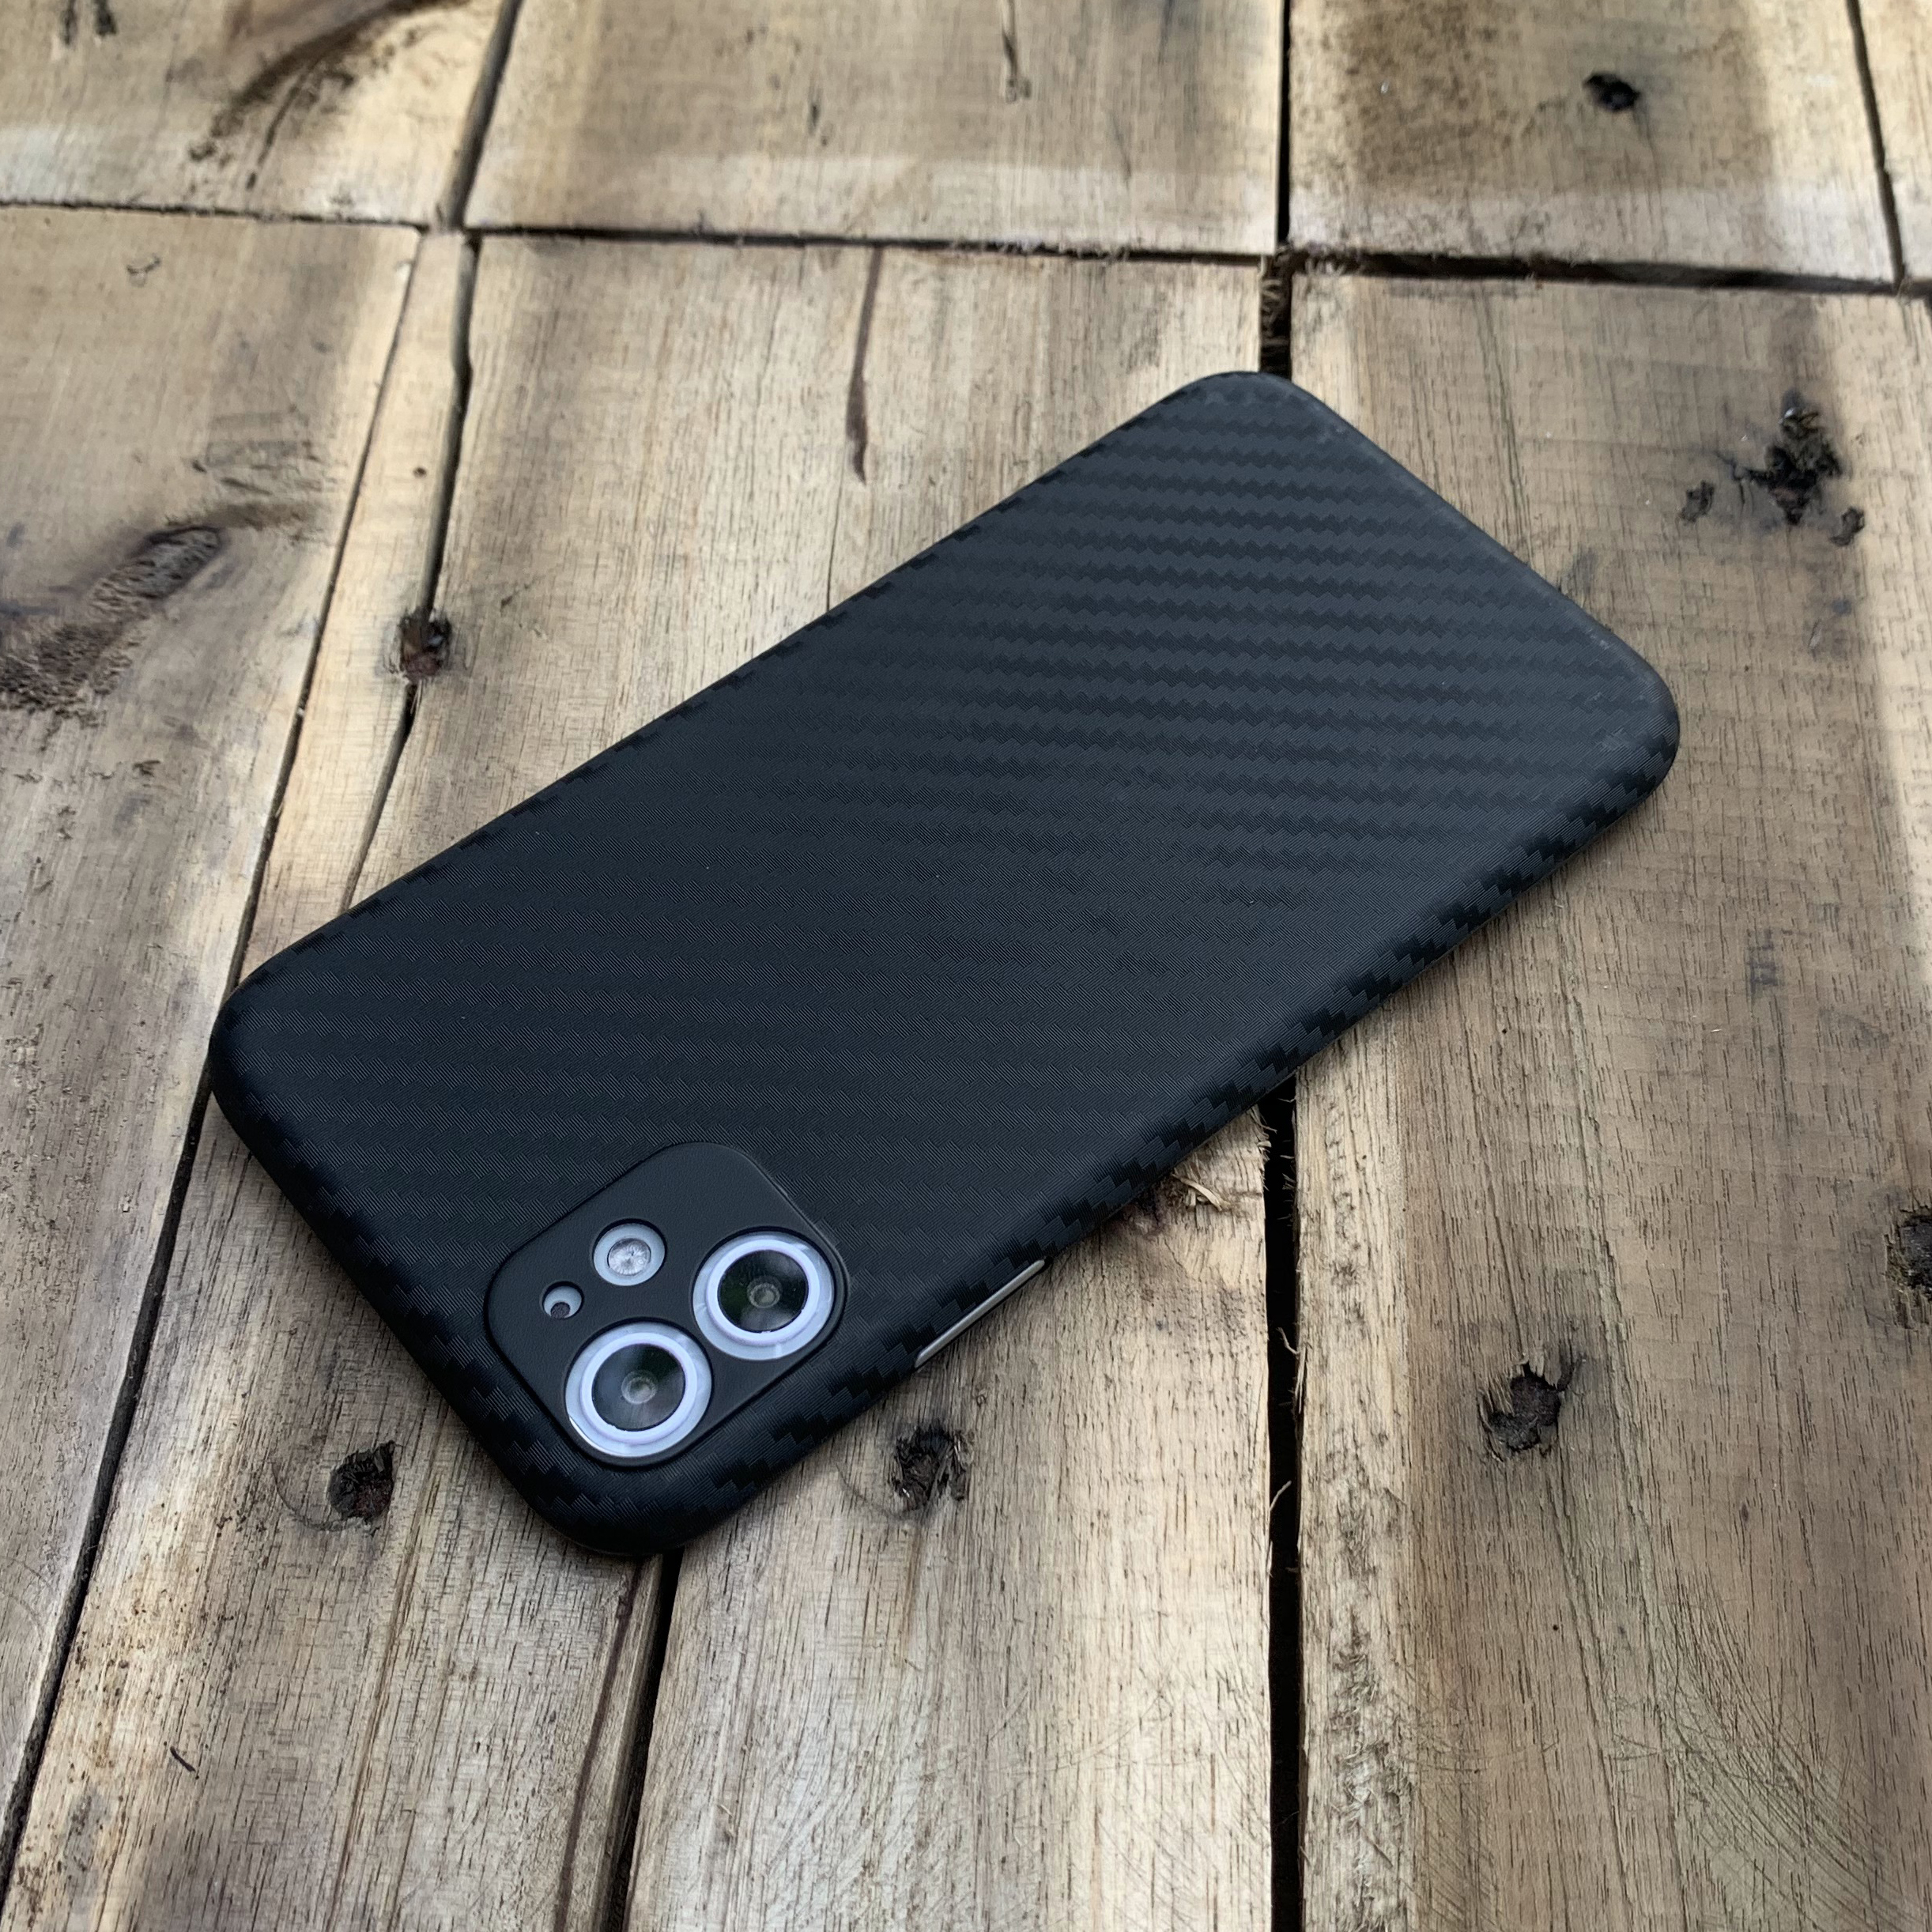 Ốp lưng siêu mỏng, vân carbon dành cho iPhone 11 - Màu đen